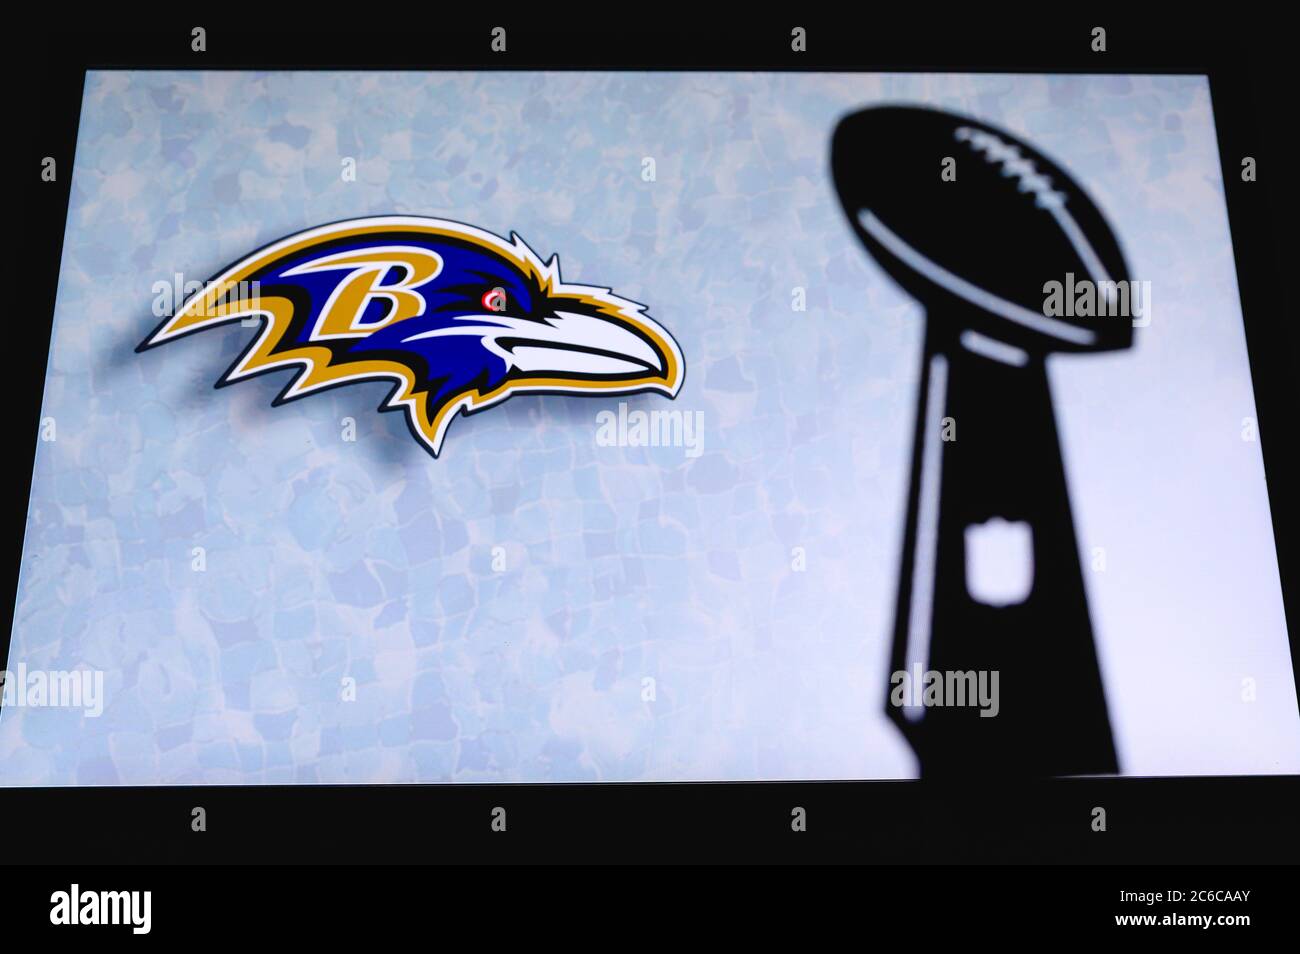 Baltimore Ravens, squadra di football americano professionista, silhouette del trofeo NFL, logo del club in background. Foto Stock